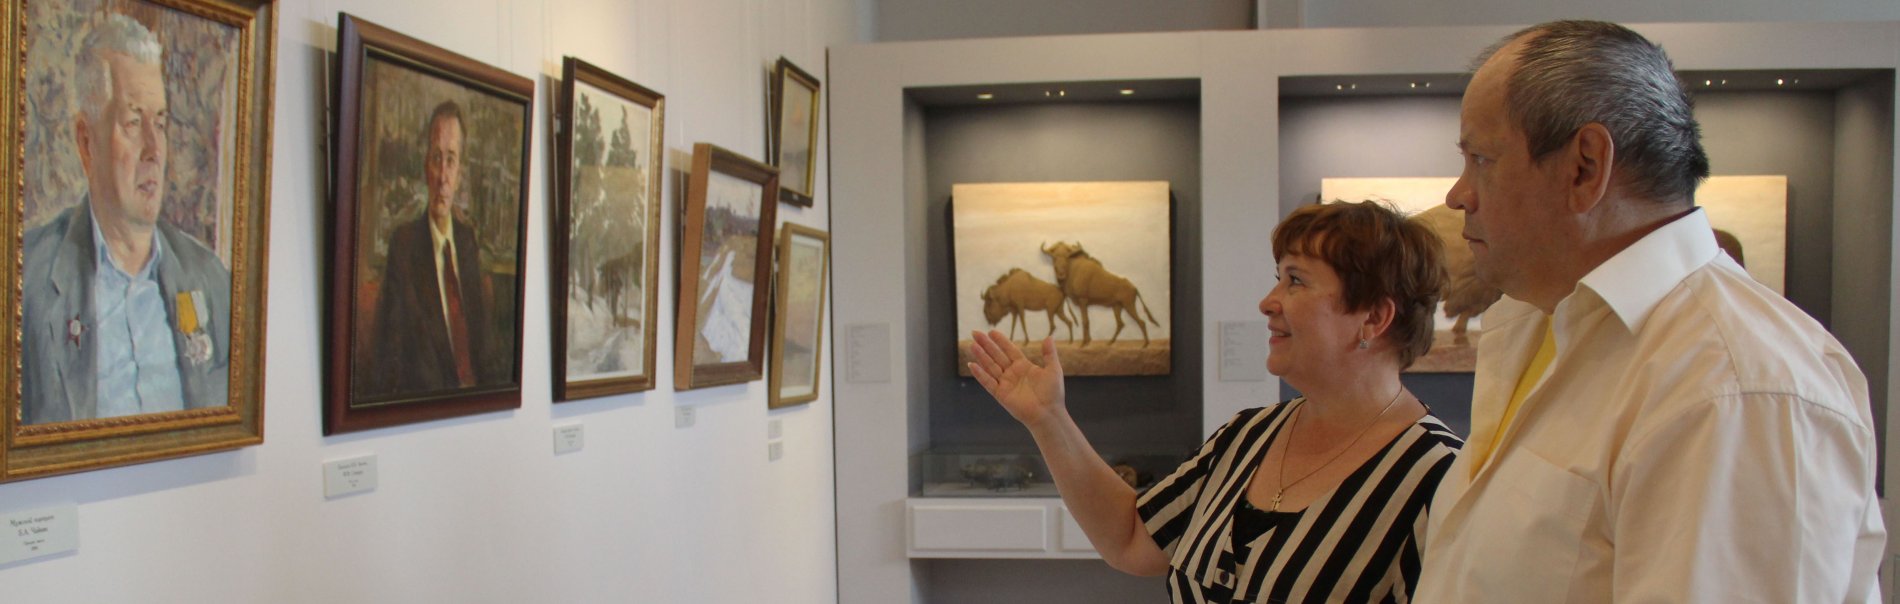 Экскурсии в ступинскую художественную галерею "Ника" вдохновляют жителей на творчество